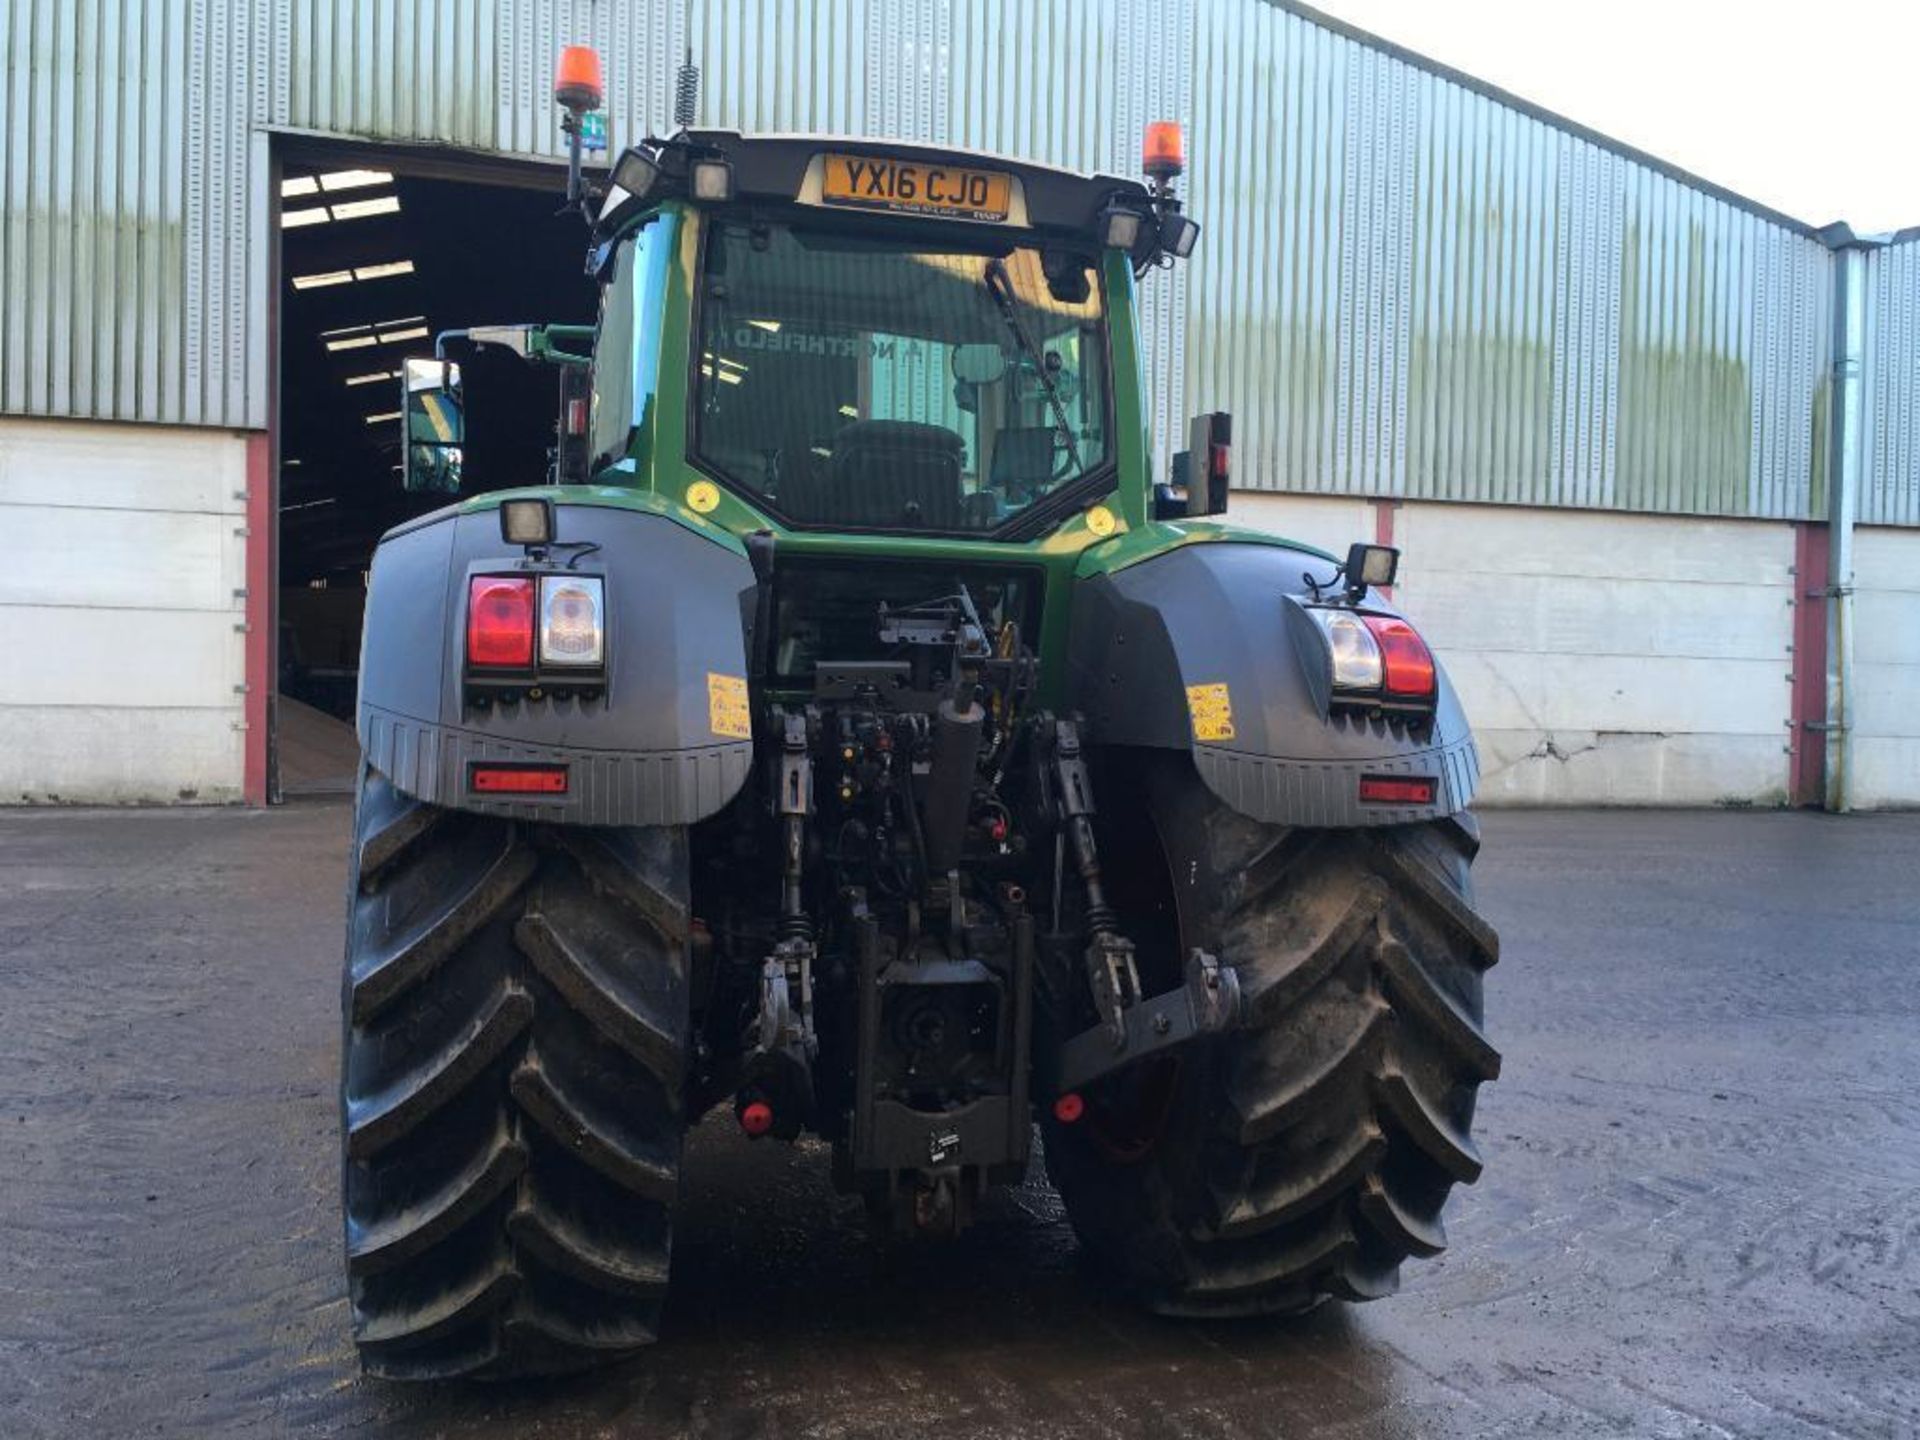 2016 Fendt 828 Vario tractor - Image 5 of 11